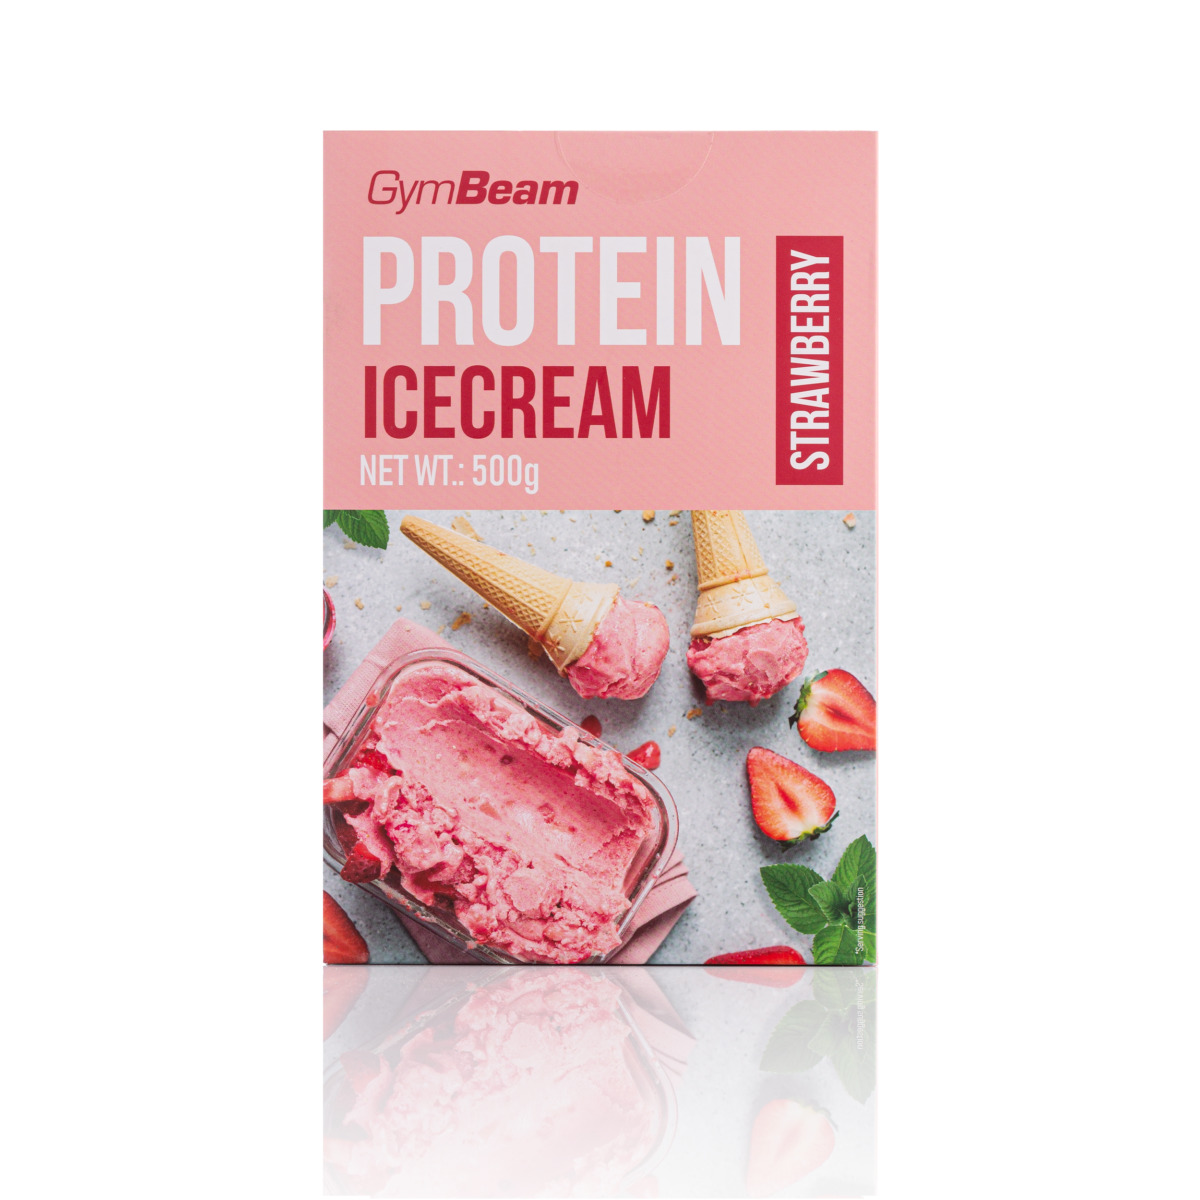 Lody Proteinowe Keto o smaku truskawkowym z firmy GymBeam. W jednym opakowaniu znajduje się 500g produktu do stworzenia lodów.